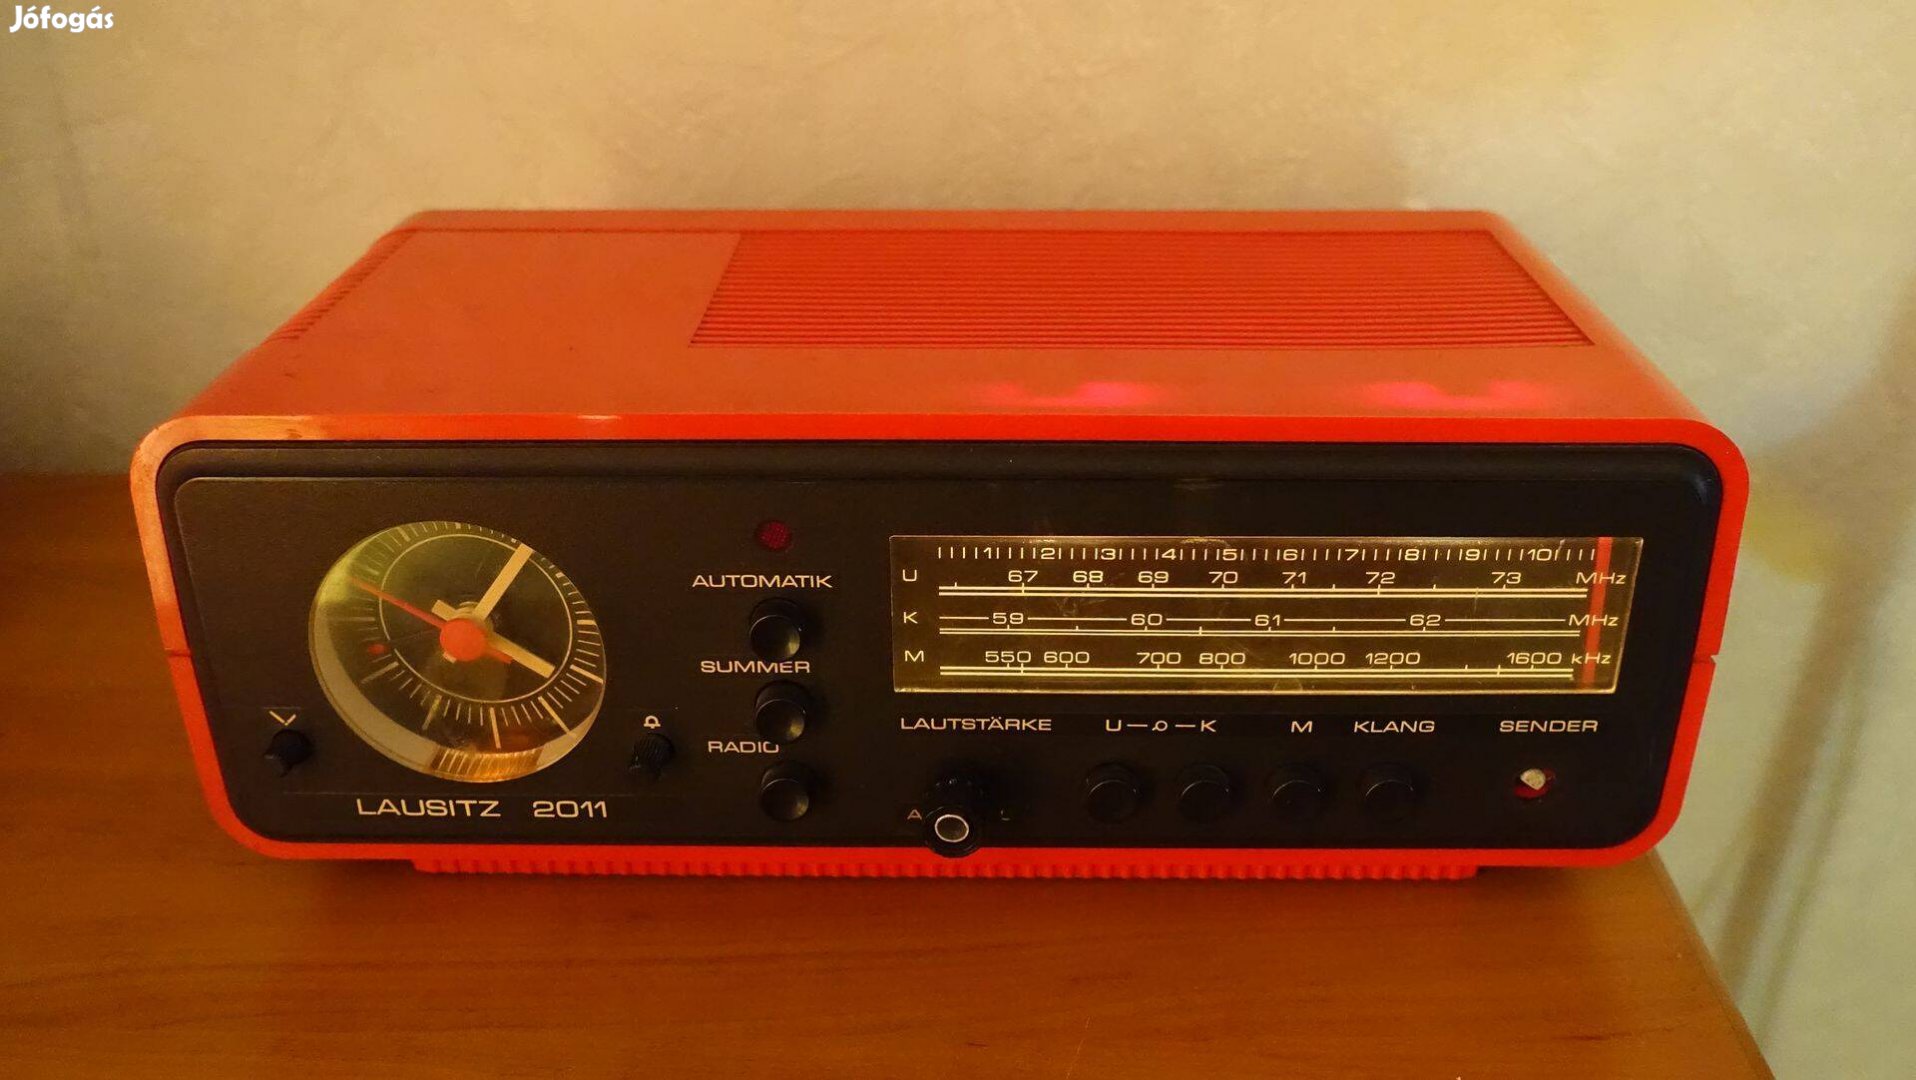 Lasitz 2011 Retro Radio 1980-ból fellelt állapotban